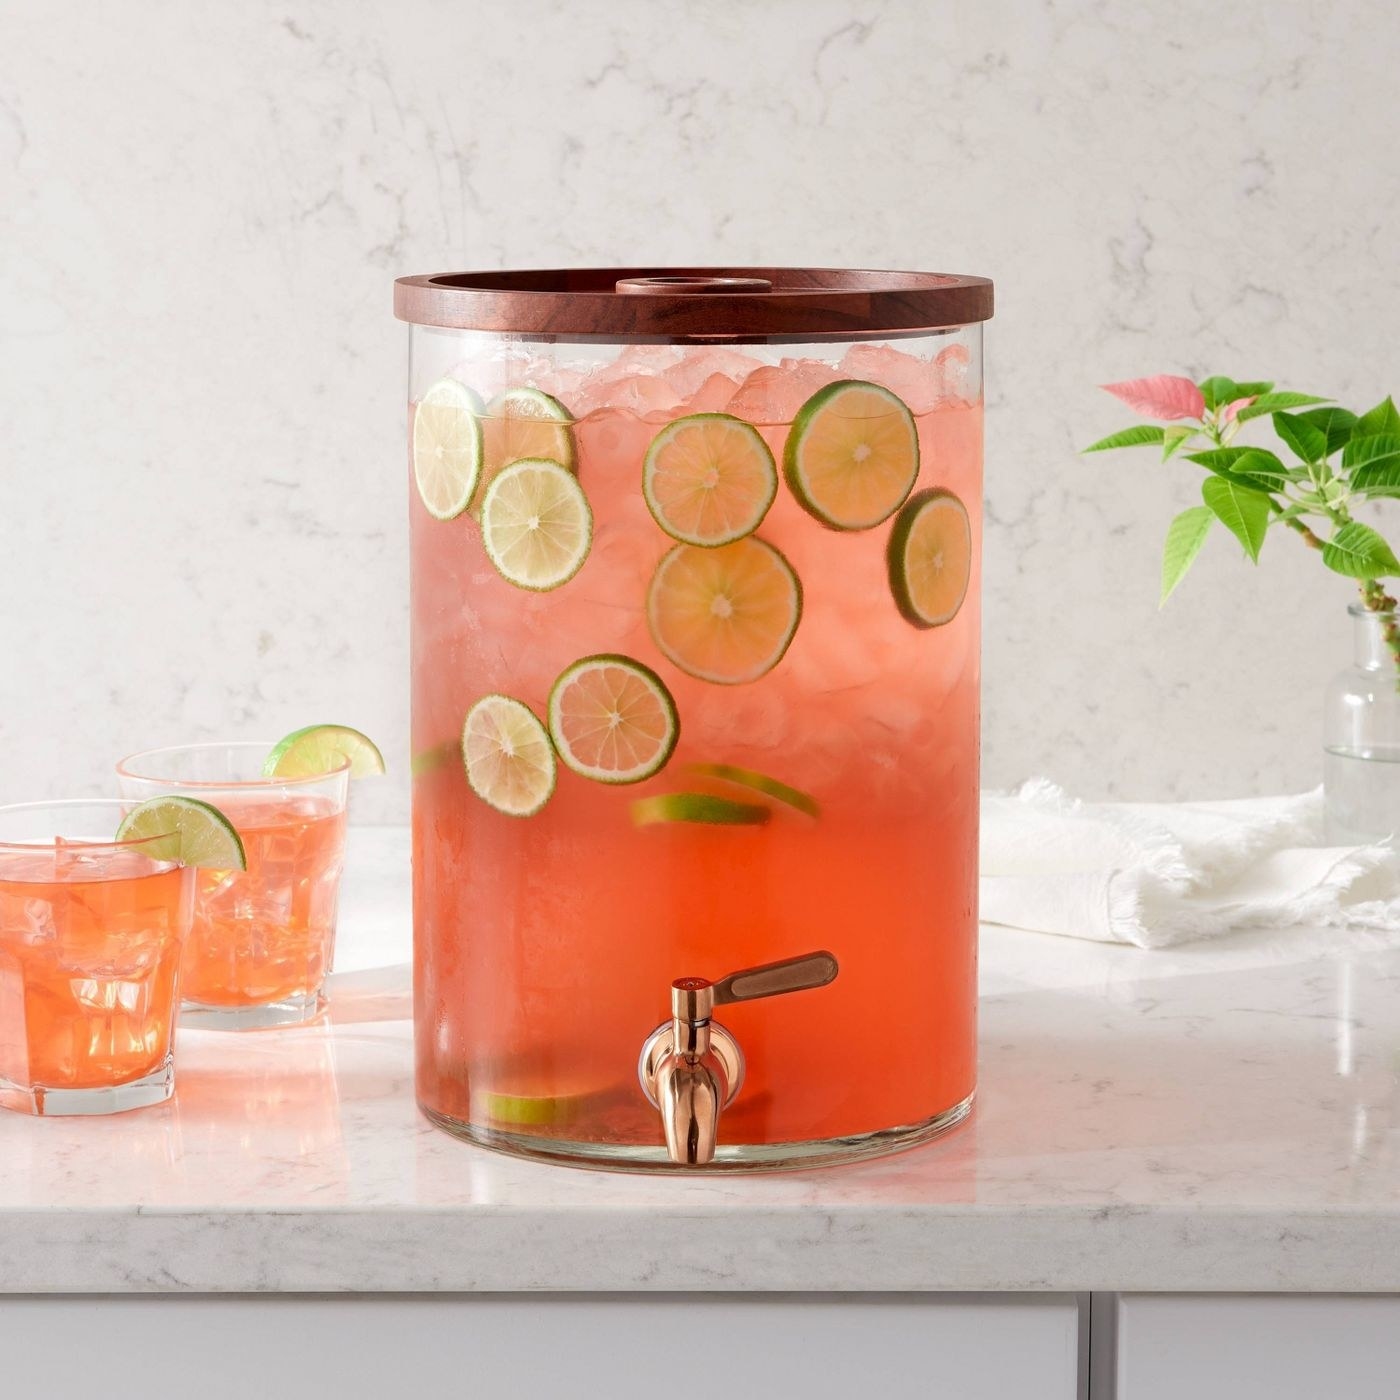 drink dispenser with orange beverage and lime slices